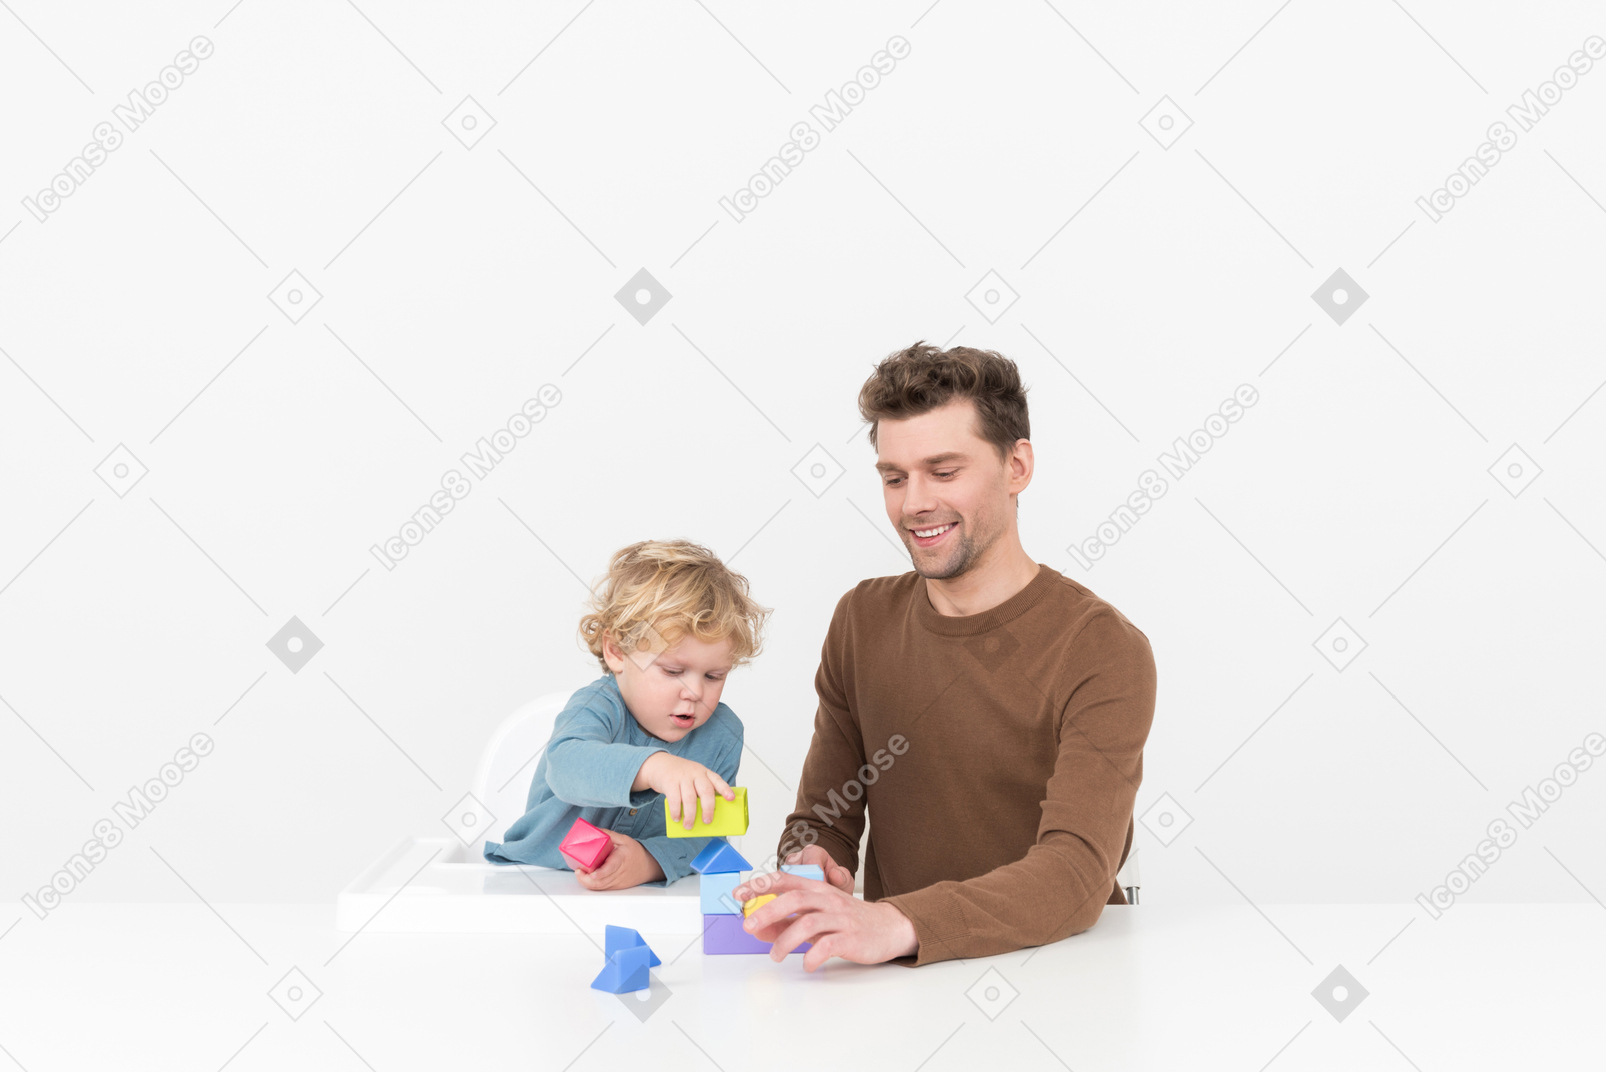 父亲坐在桌前和他的儿子一起玩